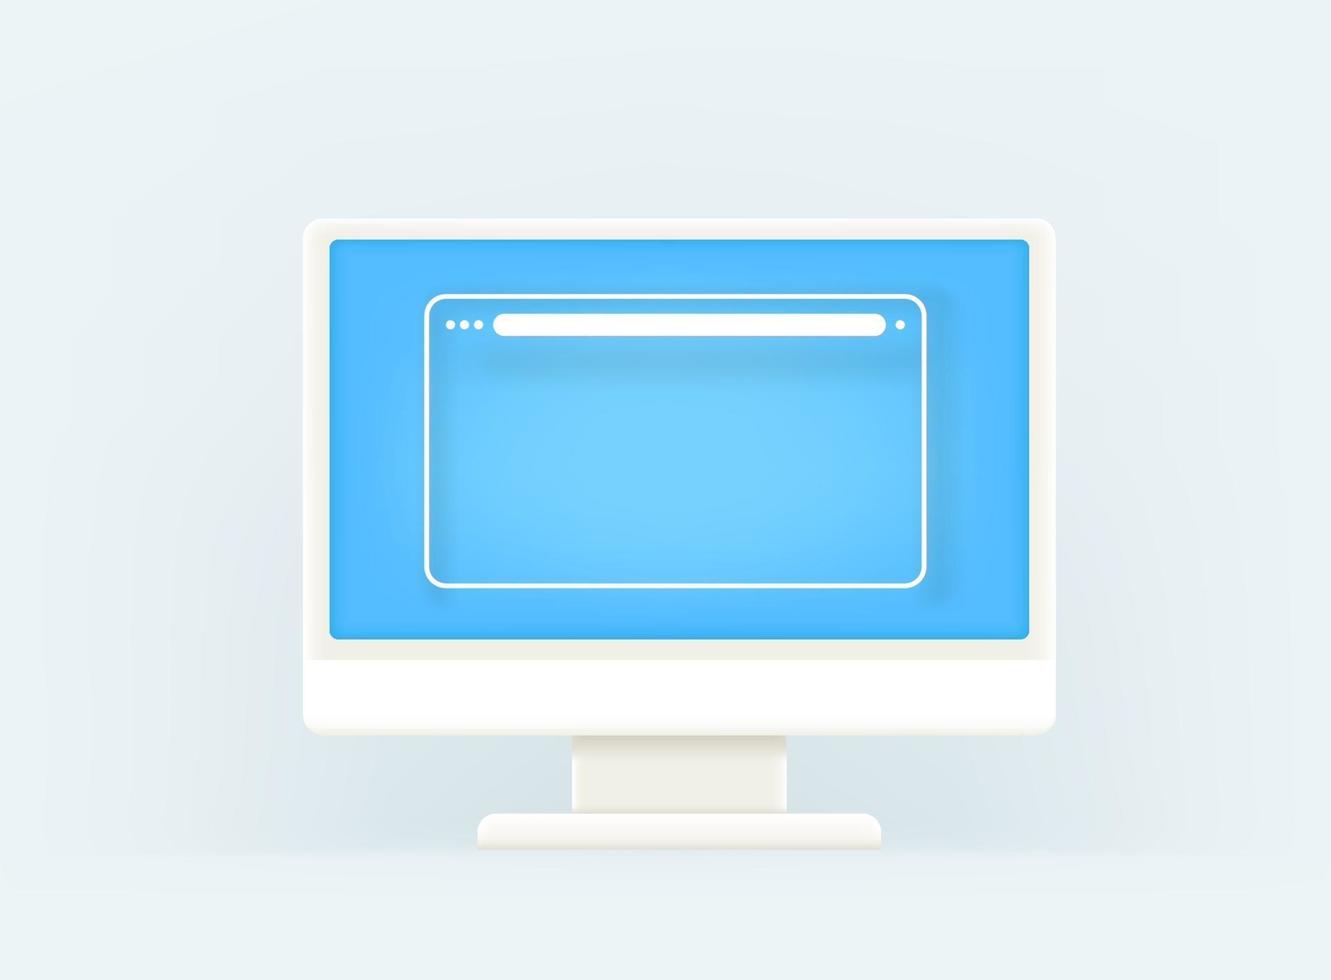 écran d'ordinateur moderne avec fenêtre de navigateur vide vecteur